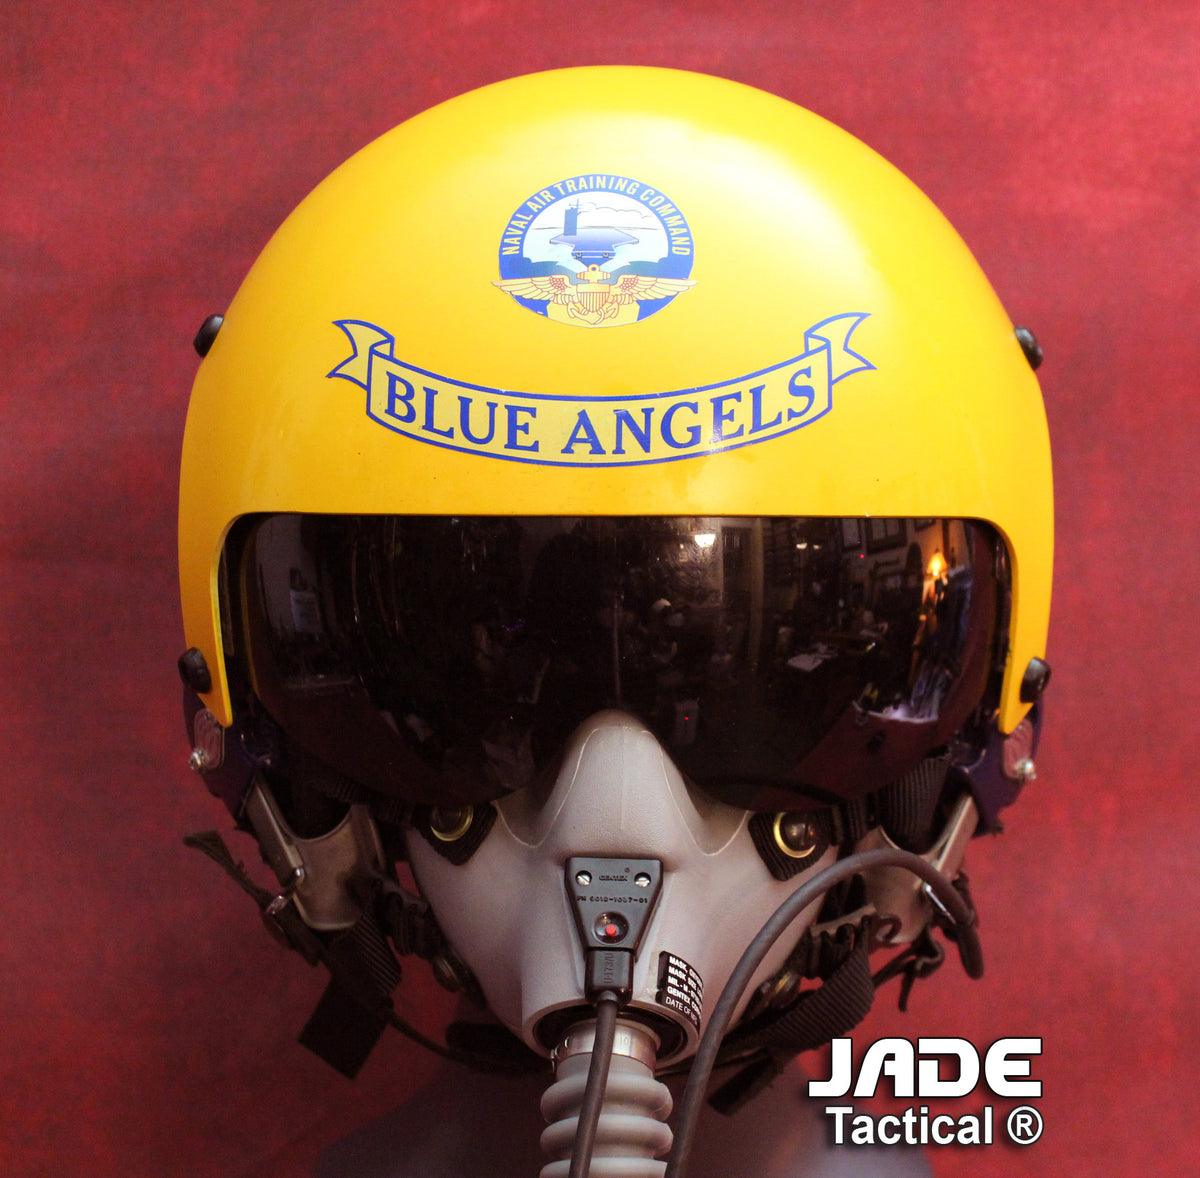 fighter pilot motorcycle helmet